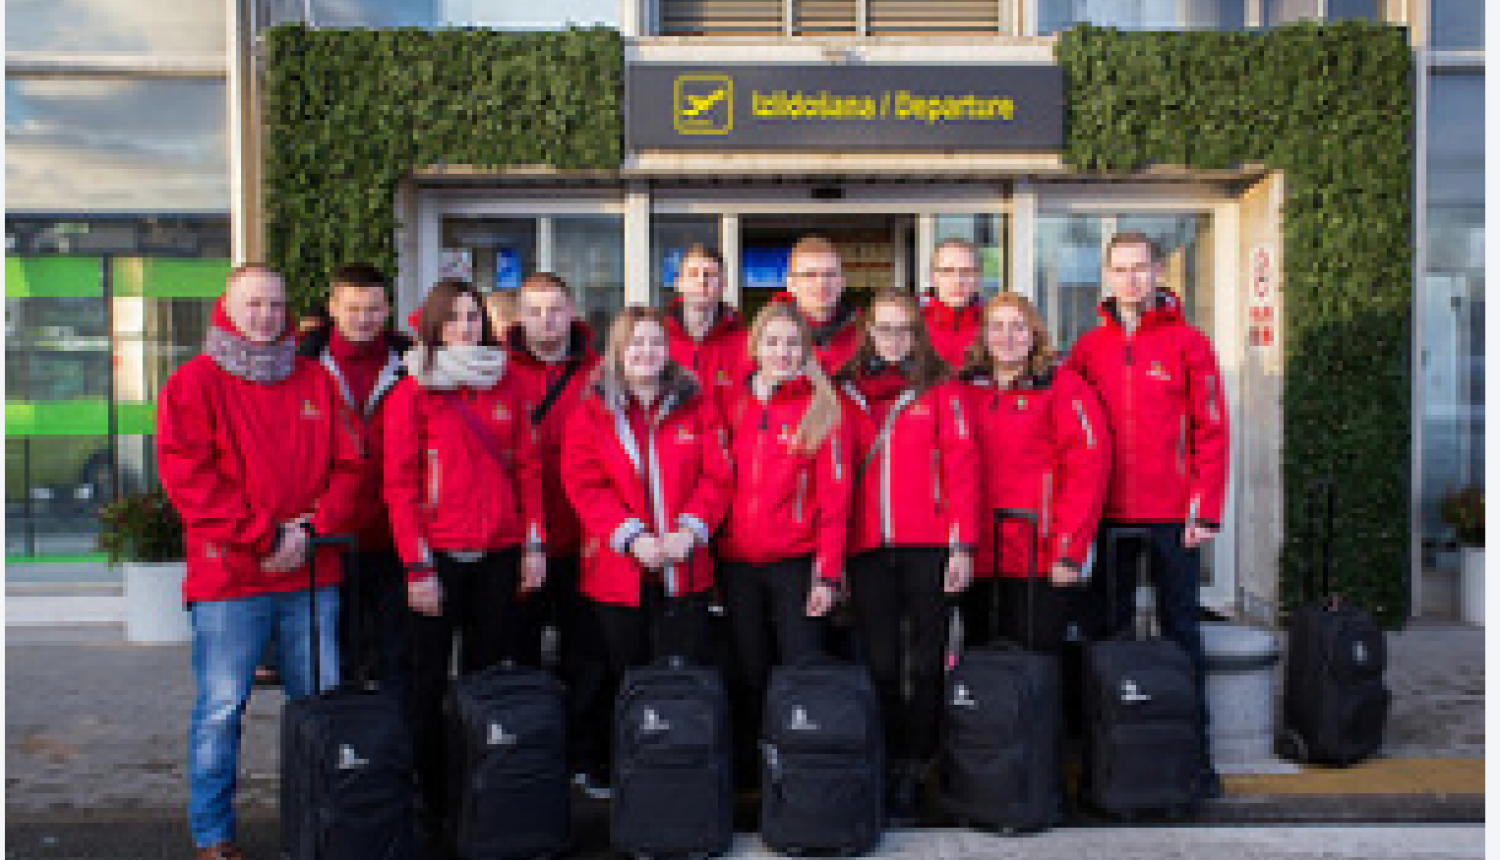 Latvijas jaunieši dodas uz profesiju olimpiskajām spēlēm EuroSkills 2016